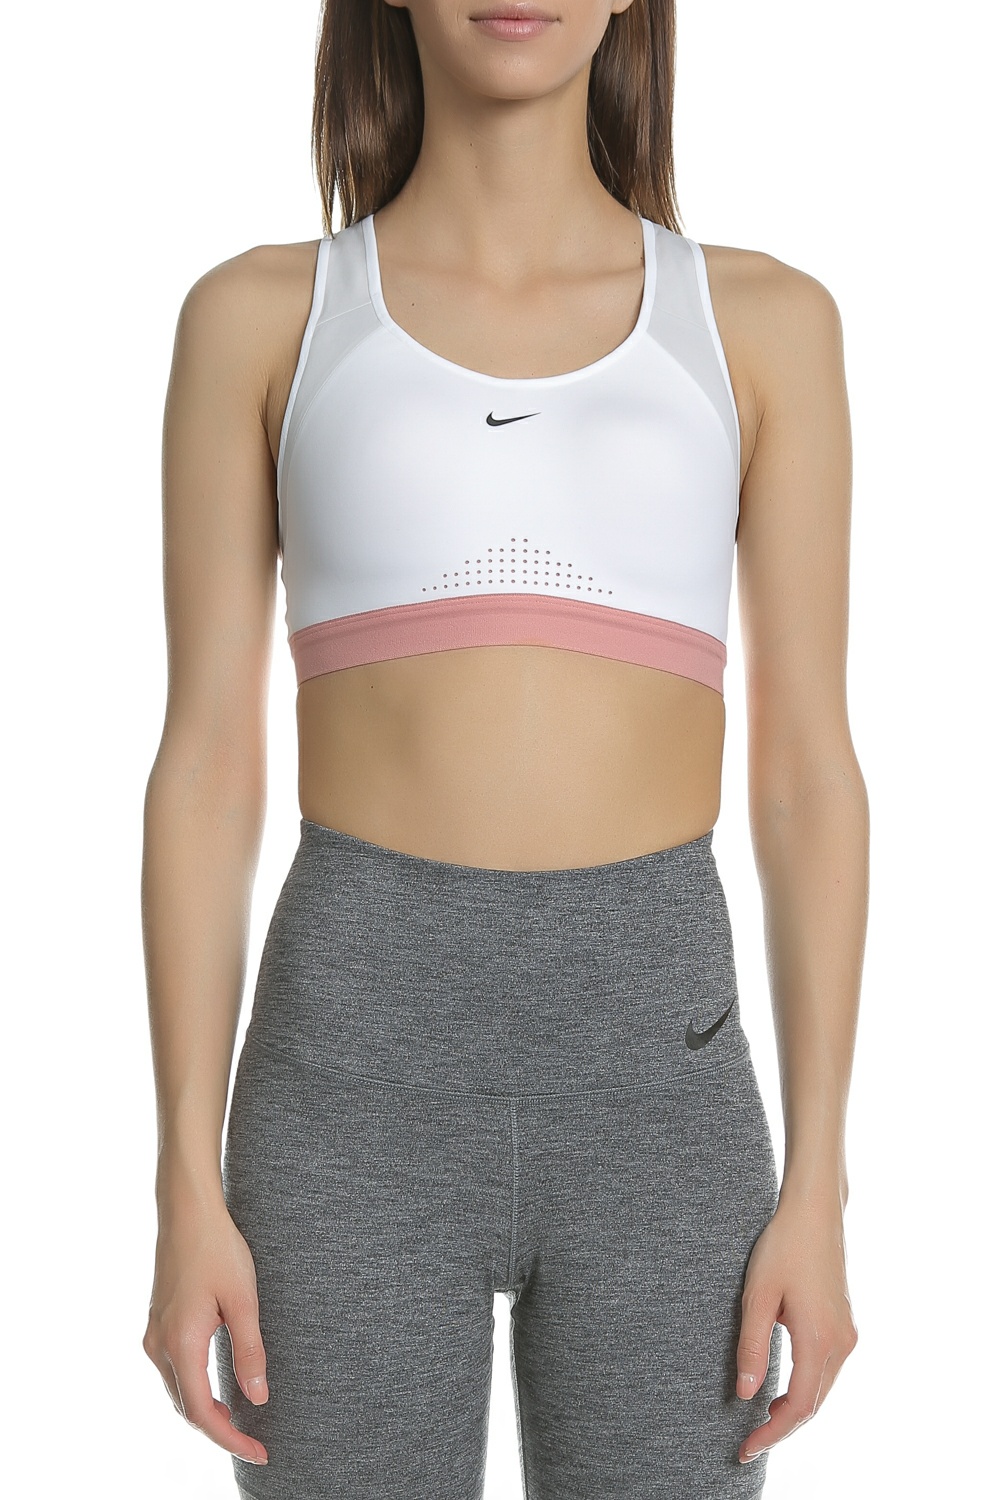 NIKE - Γυναικείο αθλητικό μπουστάκι NIKE MOTION ADAPT λευκό Γυναικεία/Ρούχα/Αθλητικά/Μπουστάκια